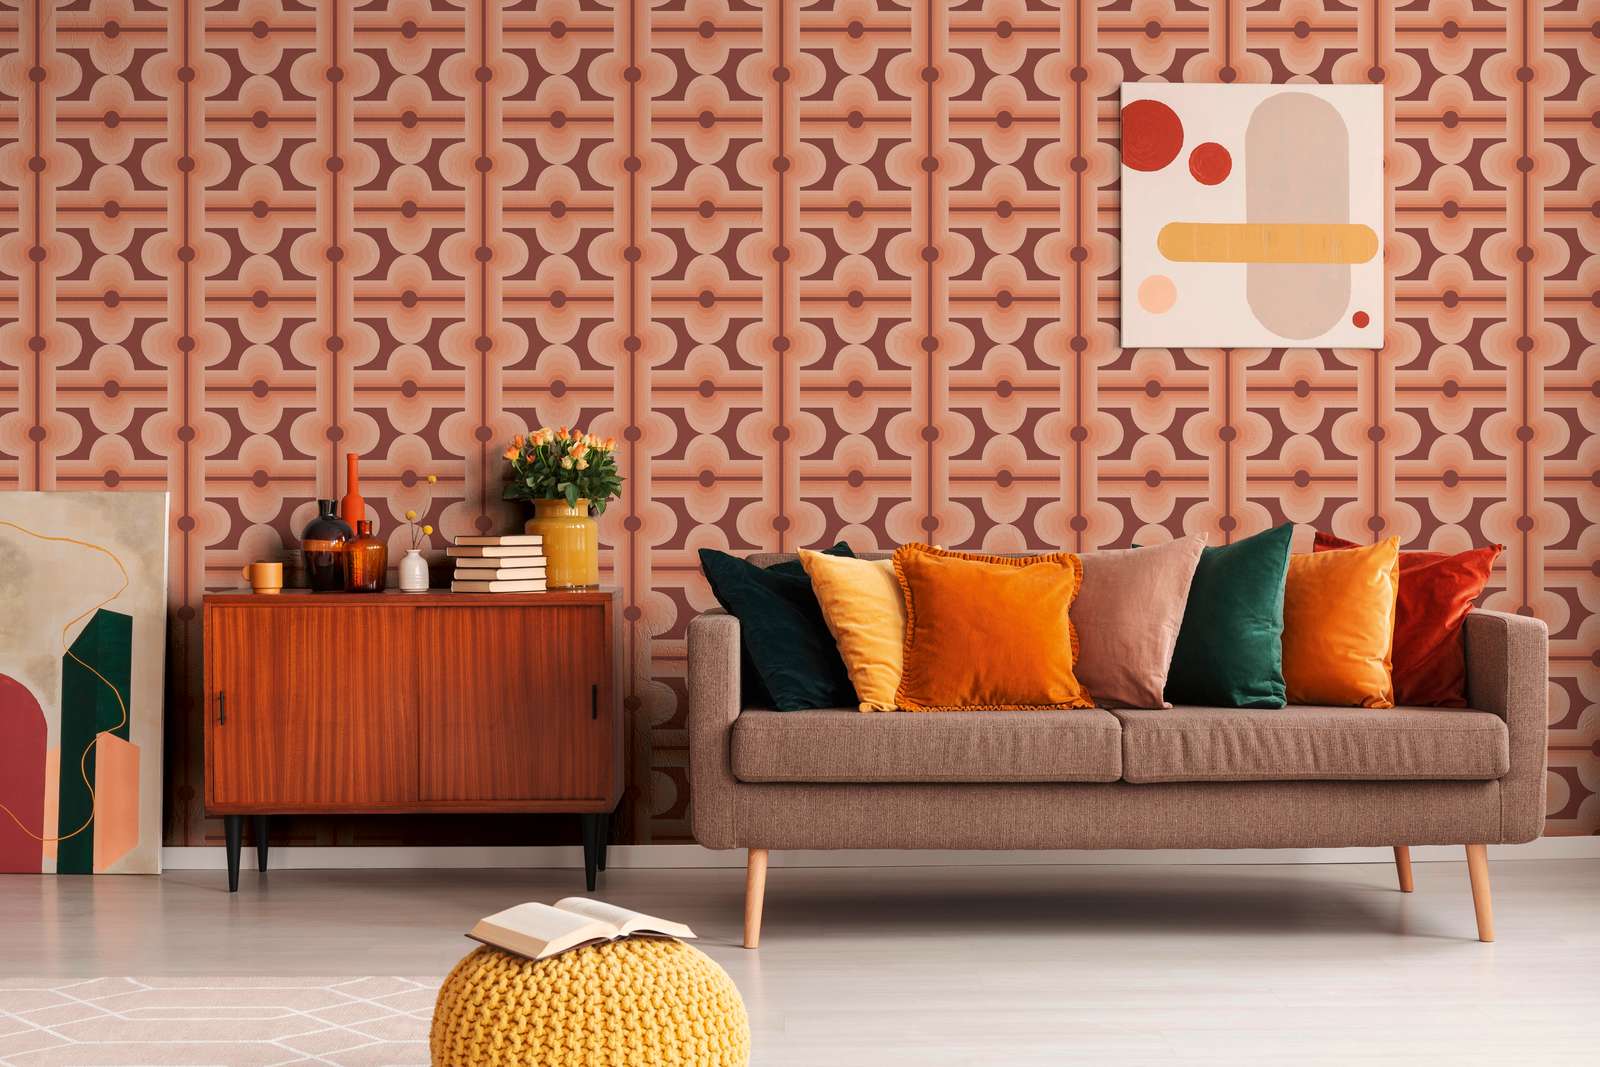             papier peint en papier intissé à motifs abstraits, style rétro - rouge, orange
        